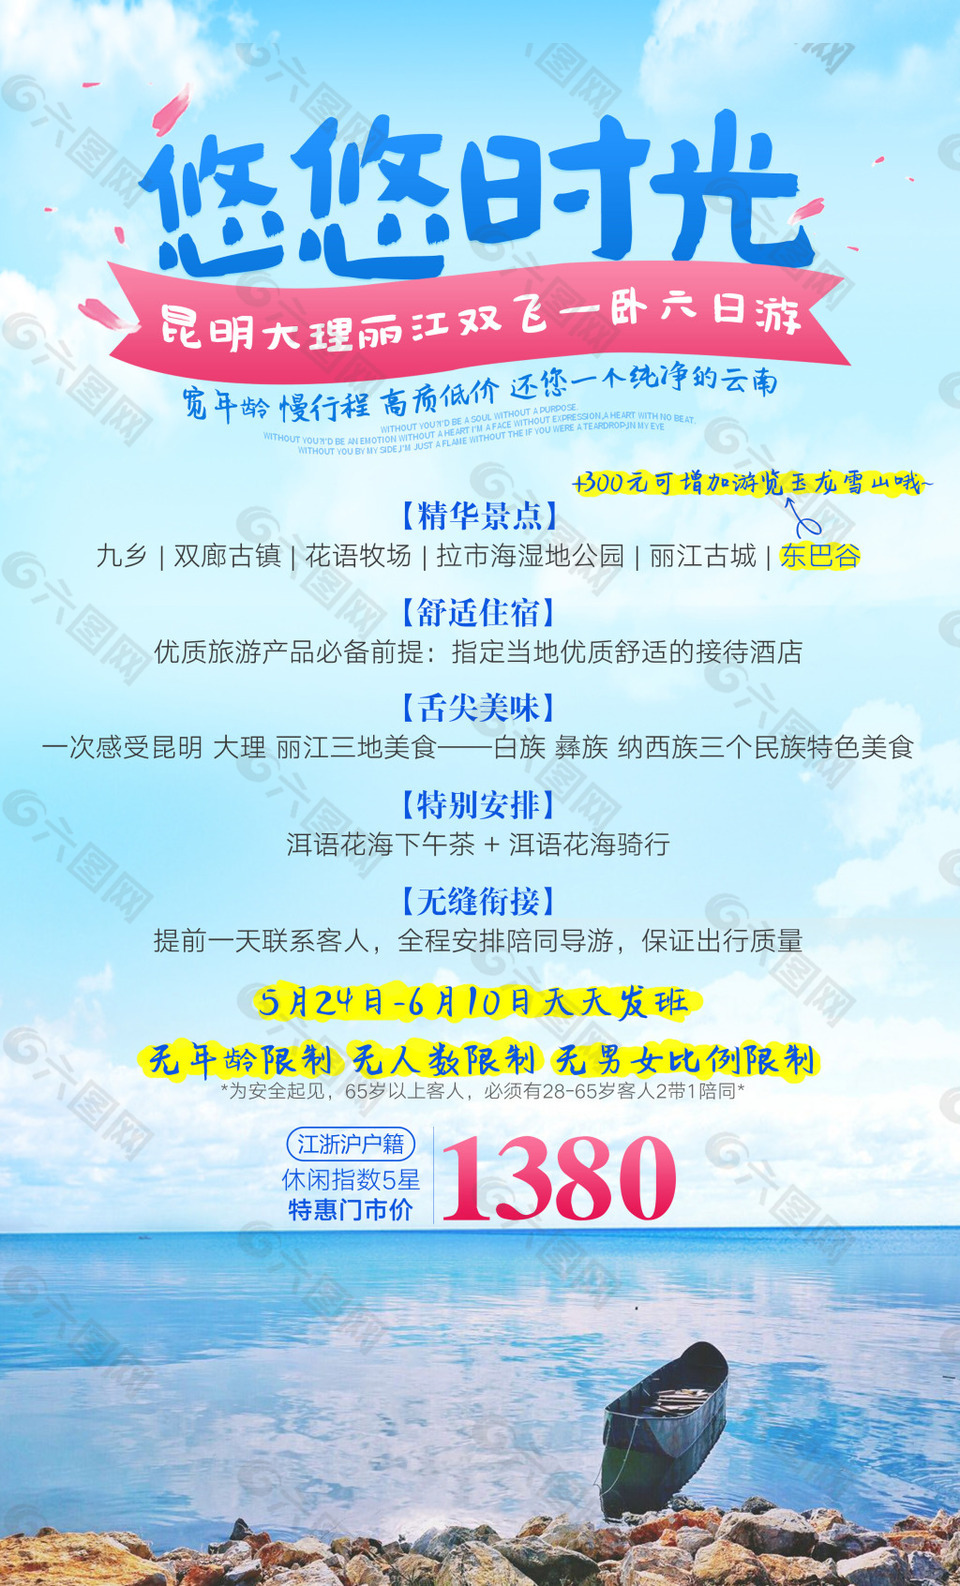 云南昆明大理丽江旅游广告宣传图